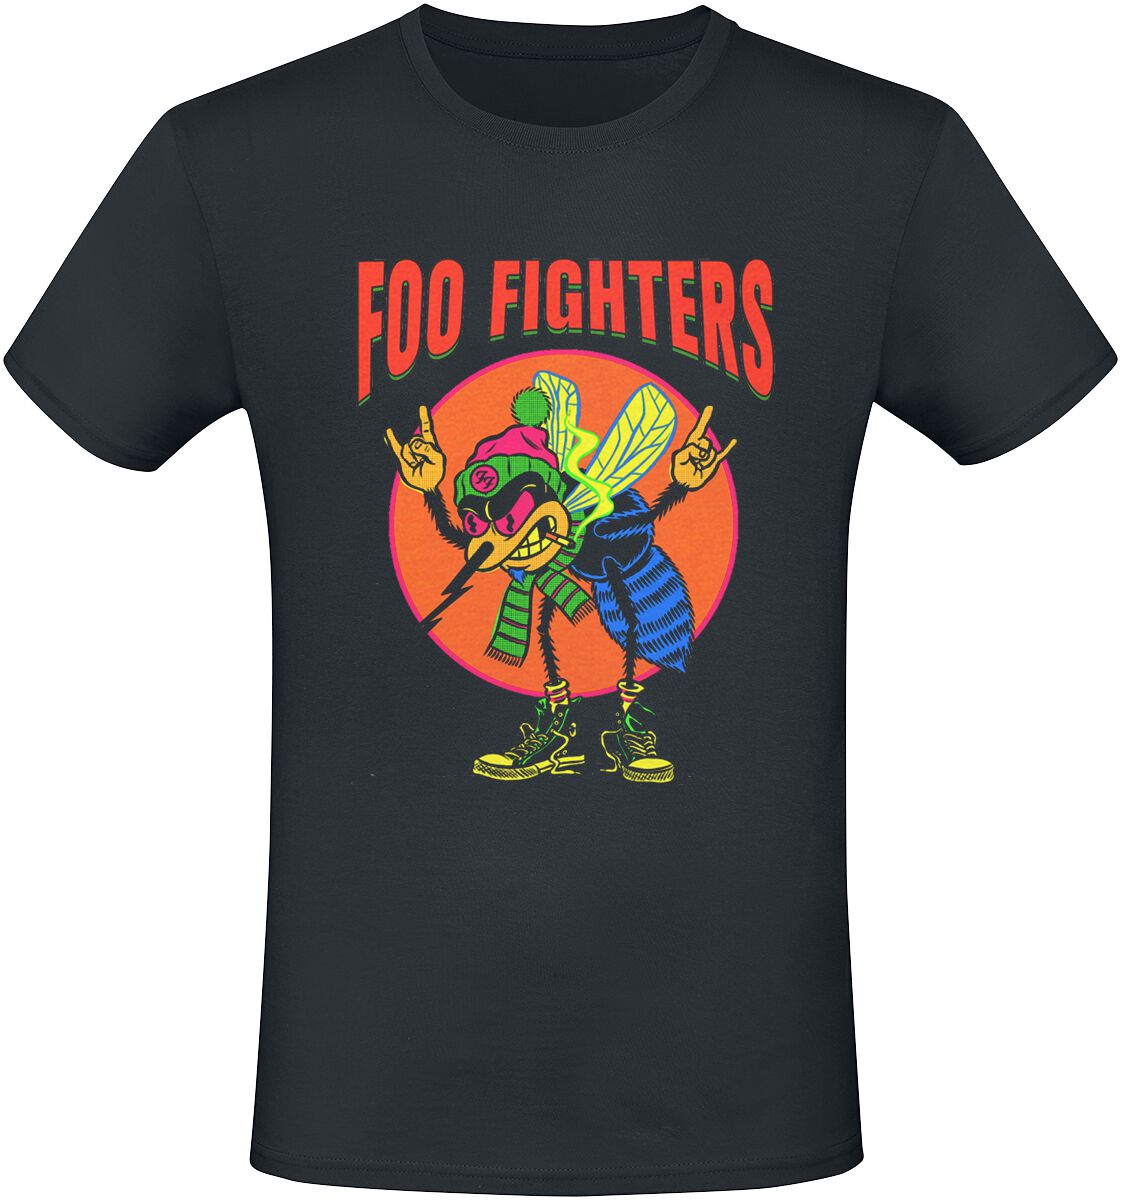 Foo Fighters T-Shirt - Mosquito - S bis 3XL - für Männer - Größe L - schwarz  - Lizenziertes Merchandise!